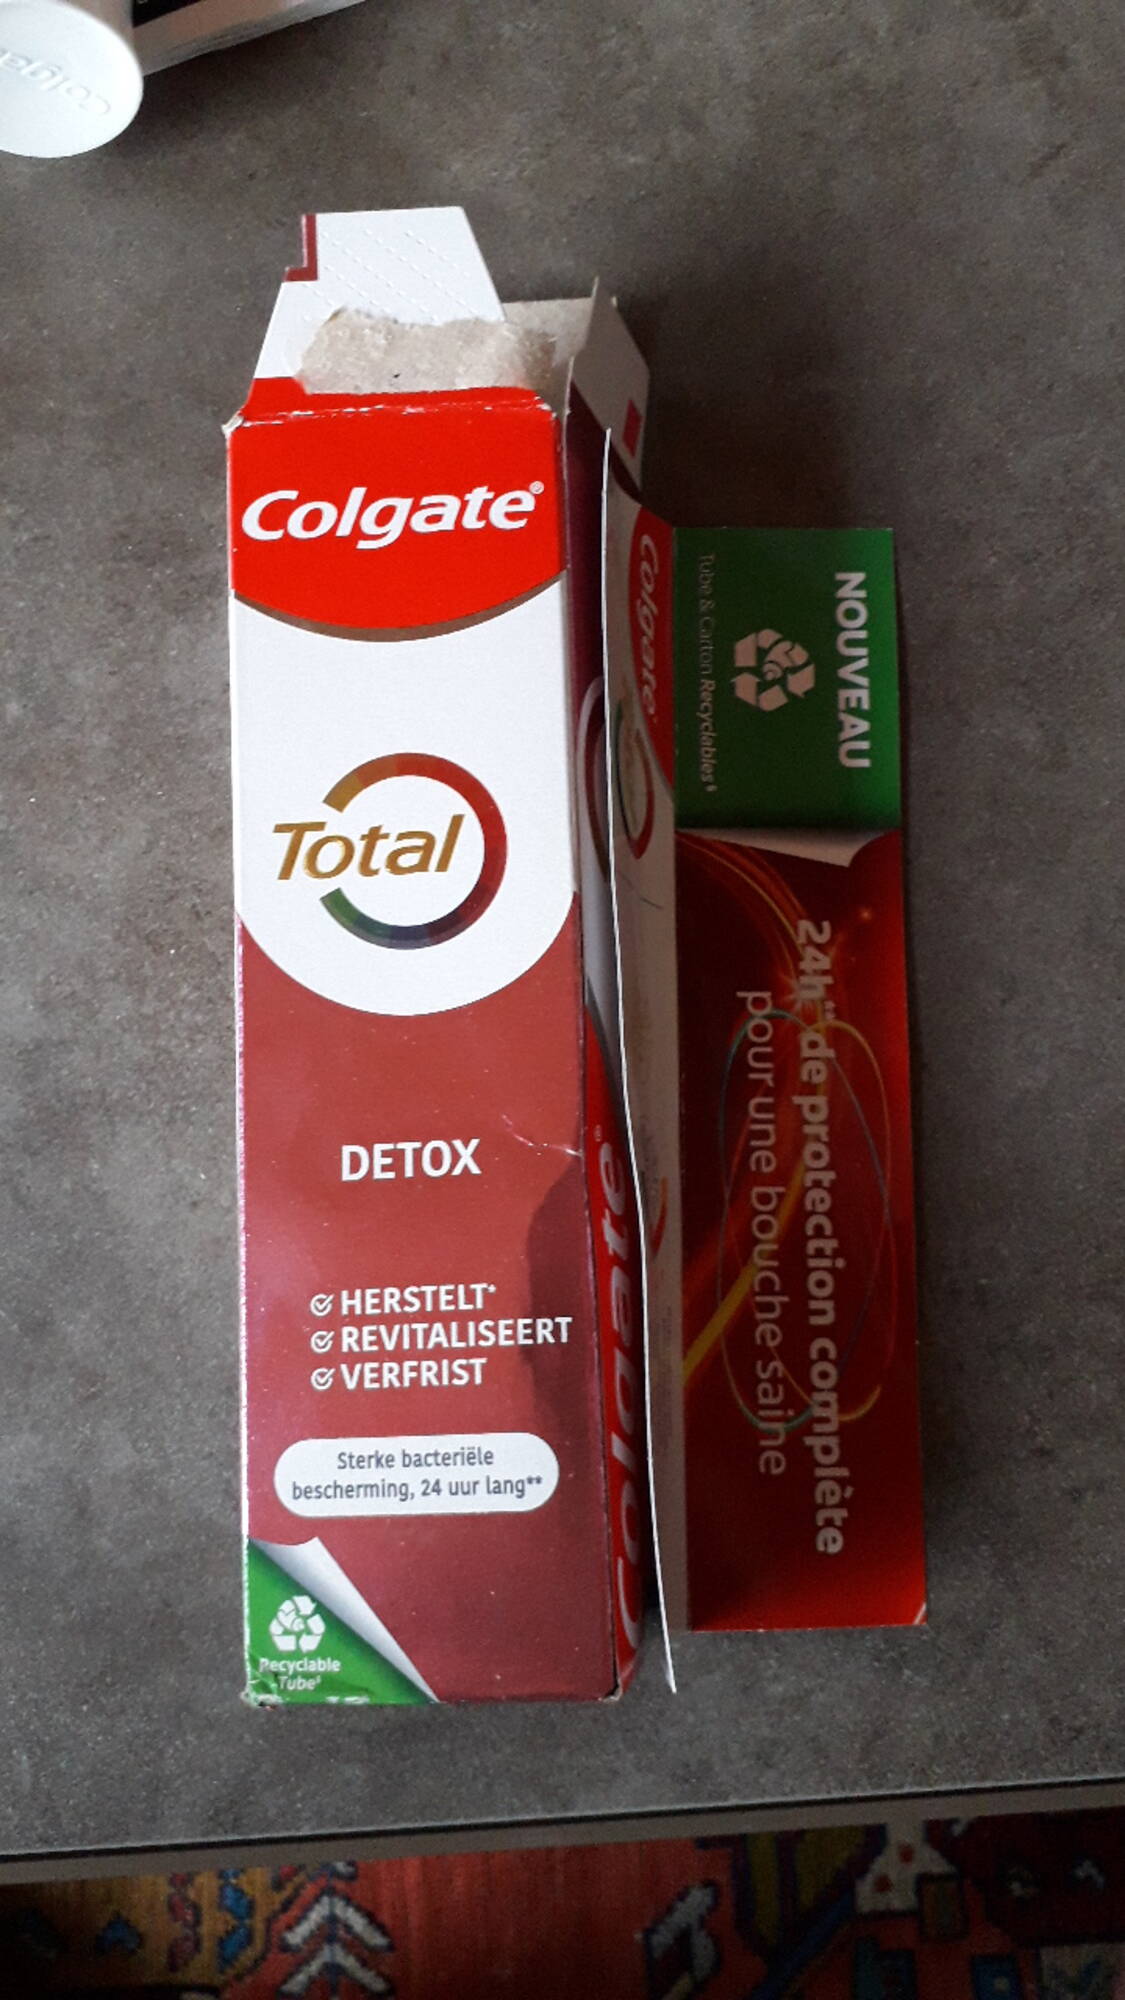 COLGATE - Total - Dentifrice detox